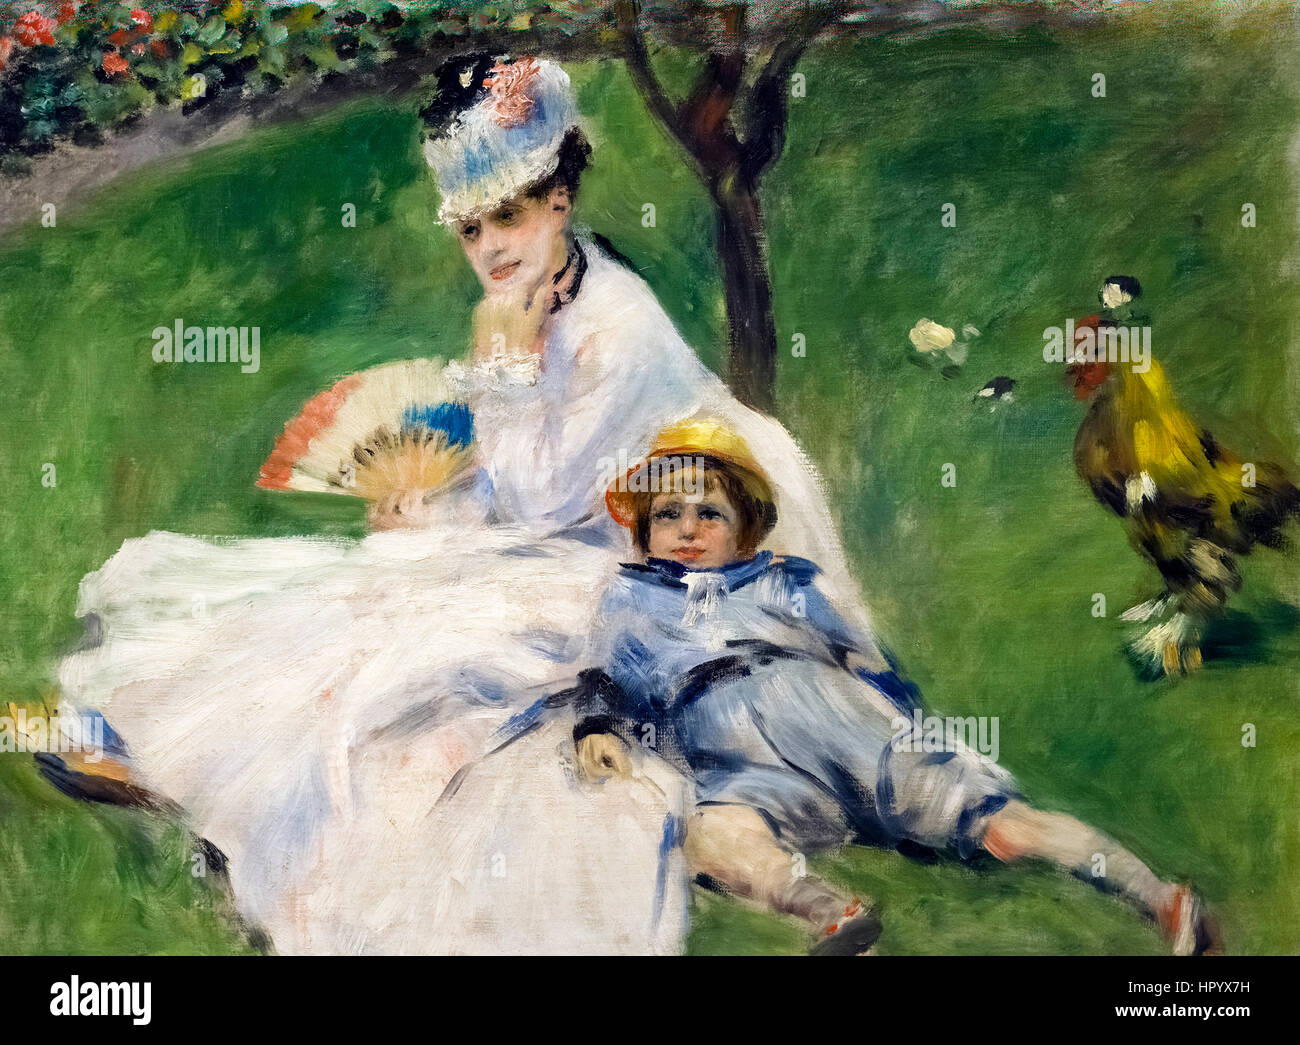 Tableau du peintre Renoir. 'Madame Monet et son fils' par Pierre Auguste Renoir (1841-1919), huile sur toile, 1874 Banque D'Images